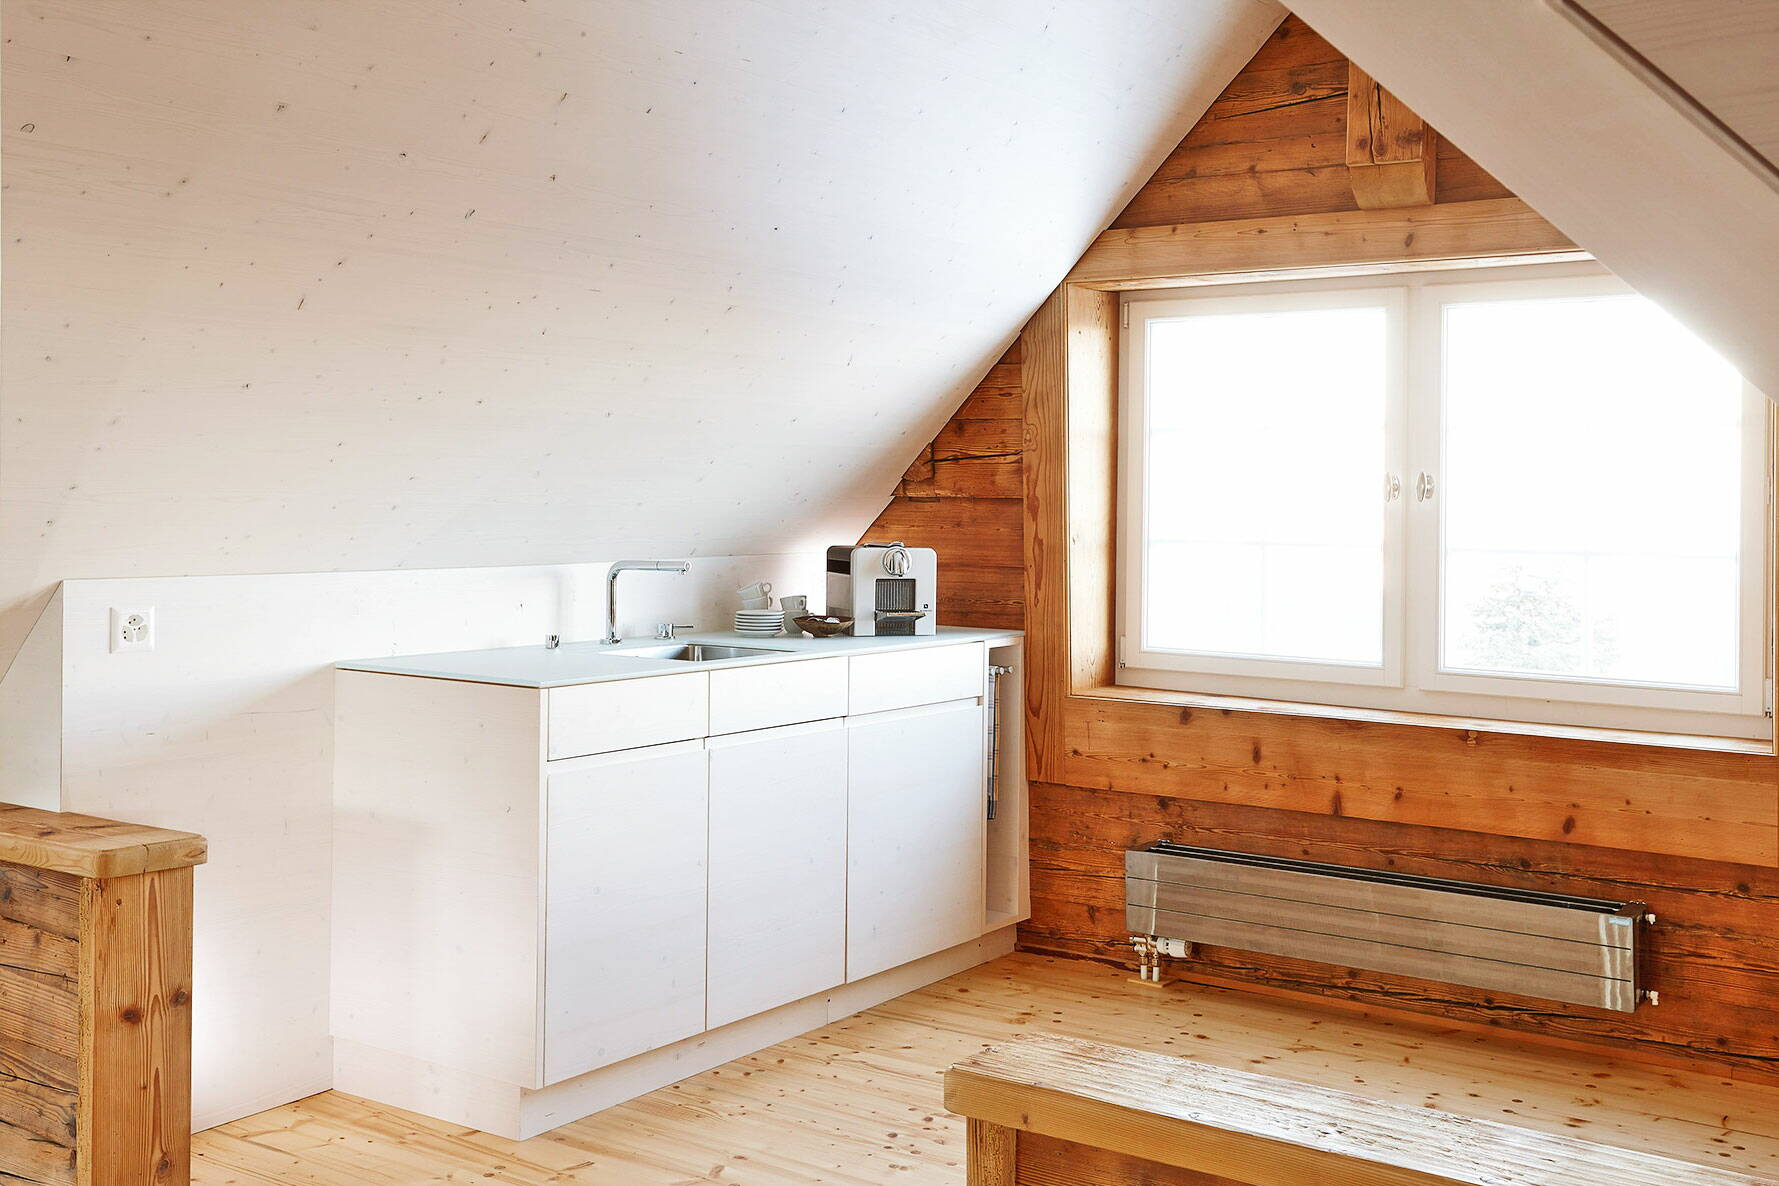 Schlichte, moderne Küche in Holz gearbeitet im Dachstock eines Altbaus mit grosszügigem Fenster.